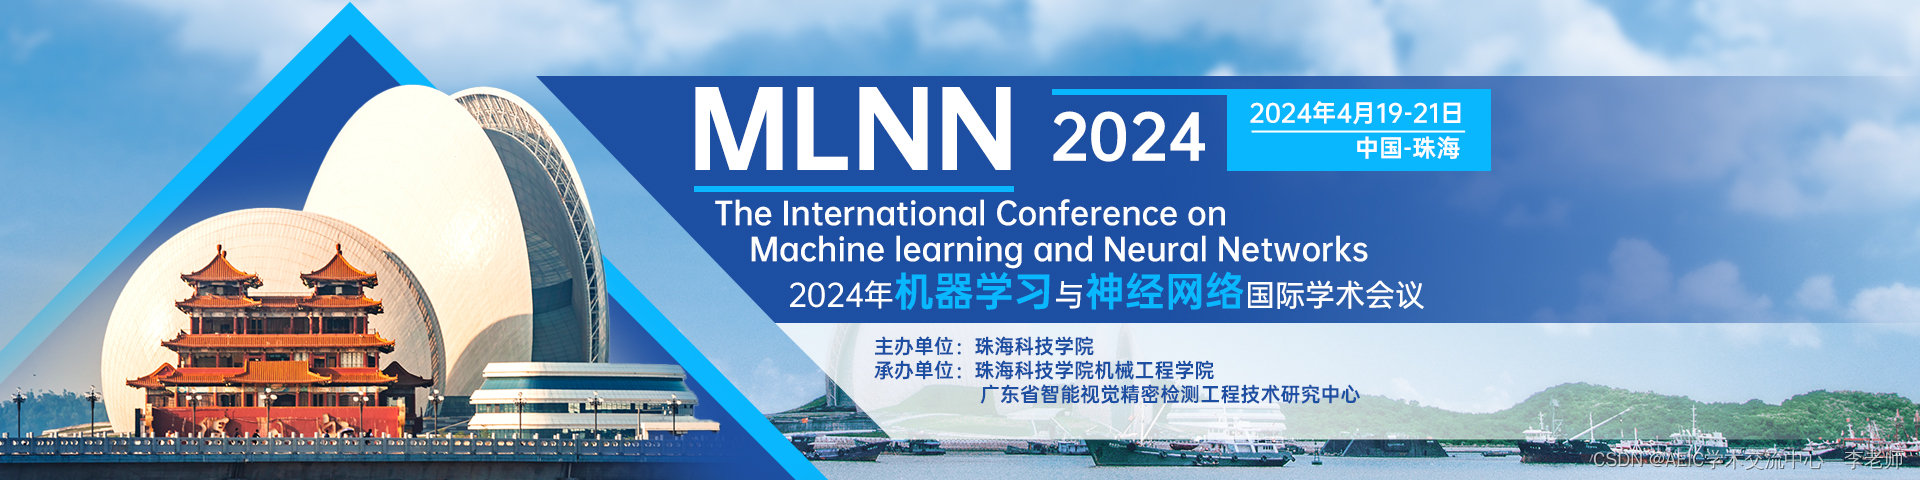 【IEEE出版、EI稳定检索】2024年机器学习与神经网络国际学术会议(MLNN 2024)